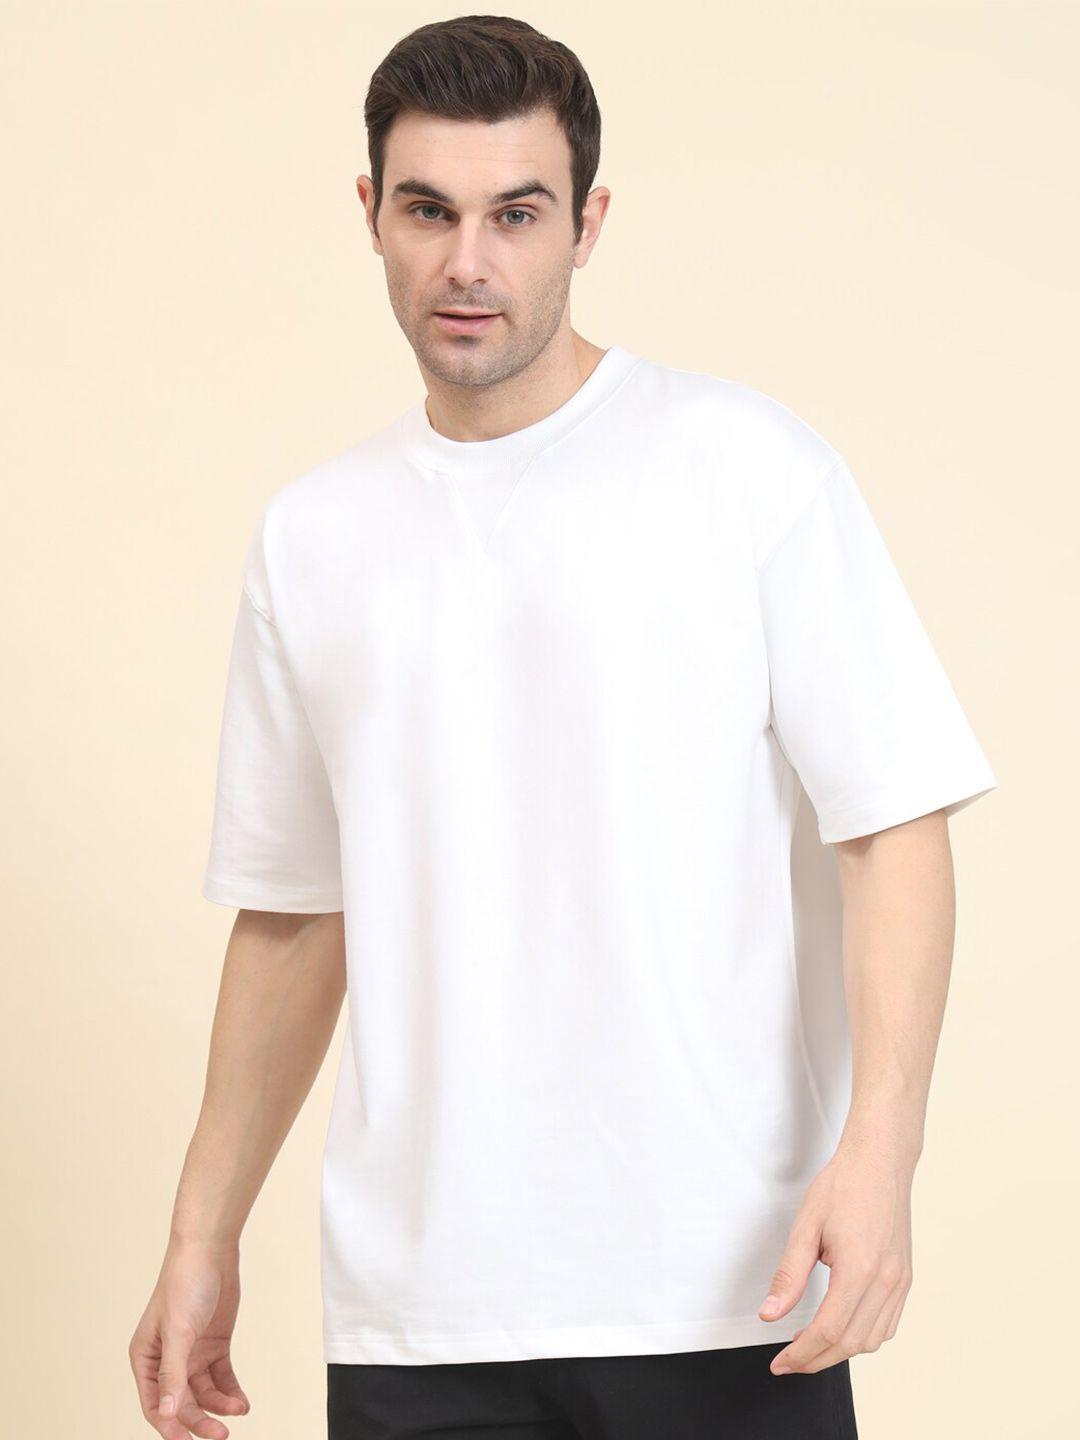 muwin round neck short sleeves bio finish oversized t-shirt